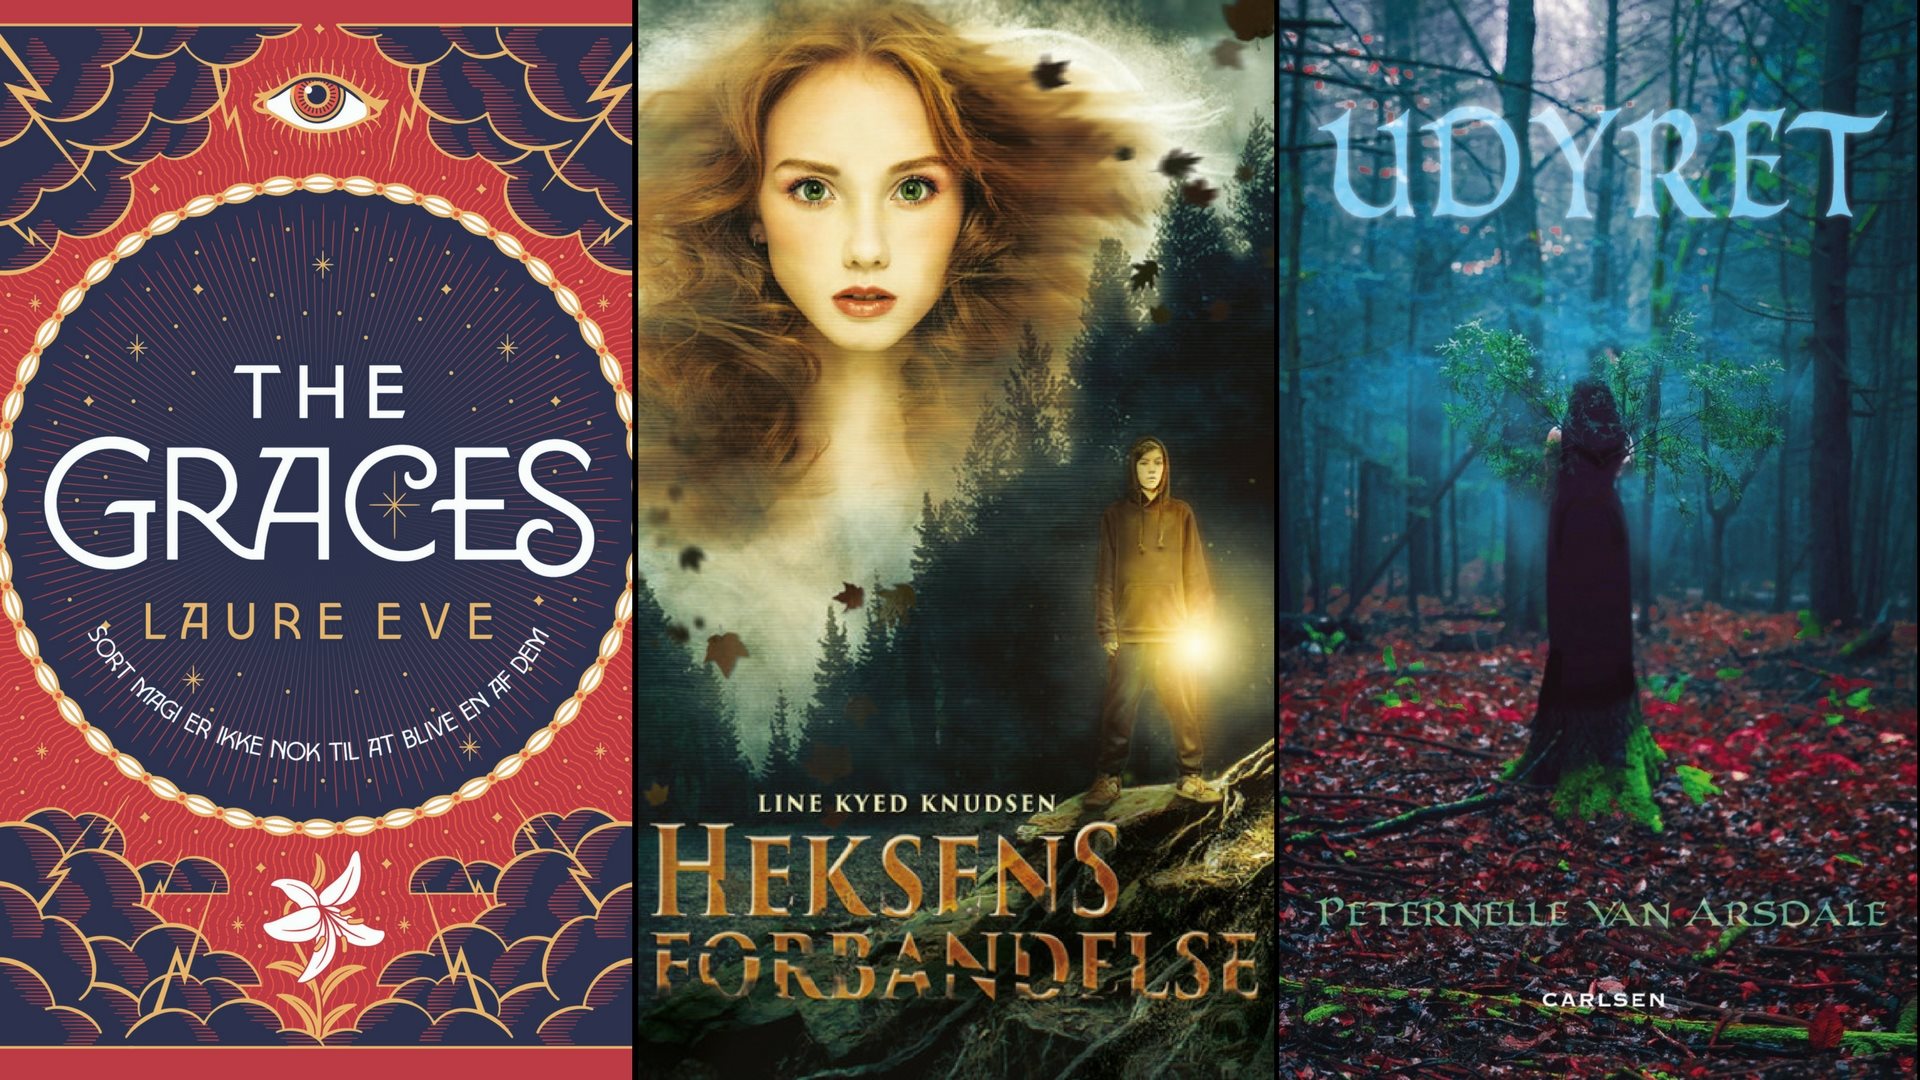 Hekseri, mystik og spænding – bøger til unge, modige læsere